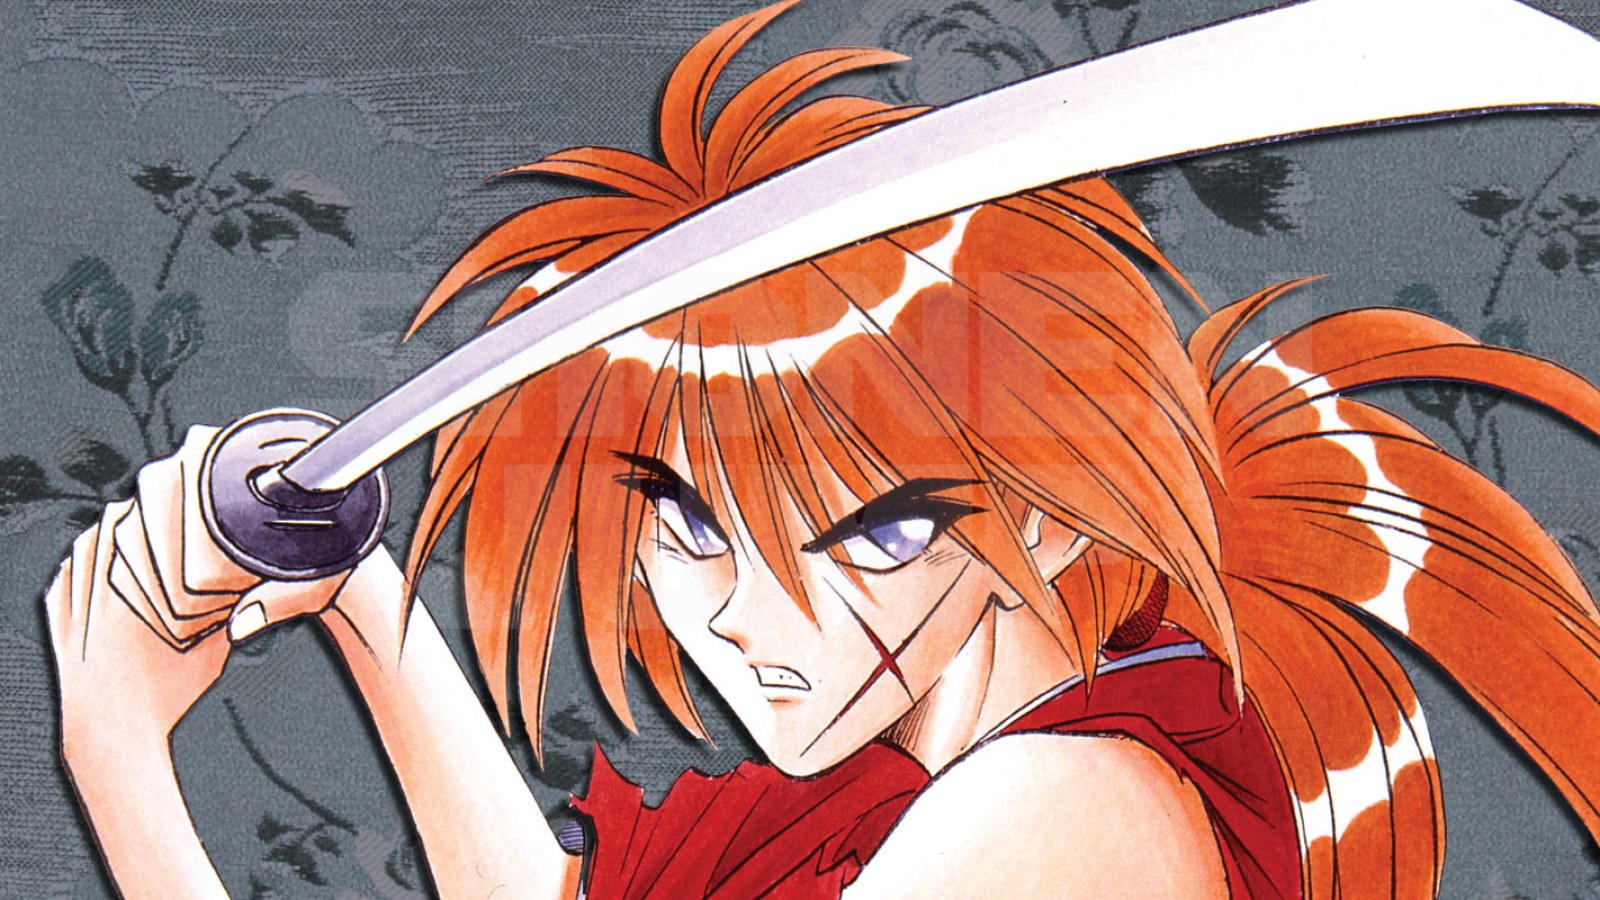 Rurouni Kenshin - Himura Kenshin  Rurouni kenshin, Kenshin anime, Anime